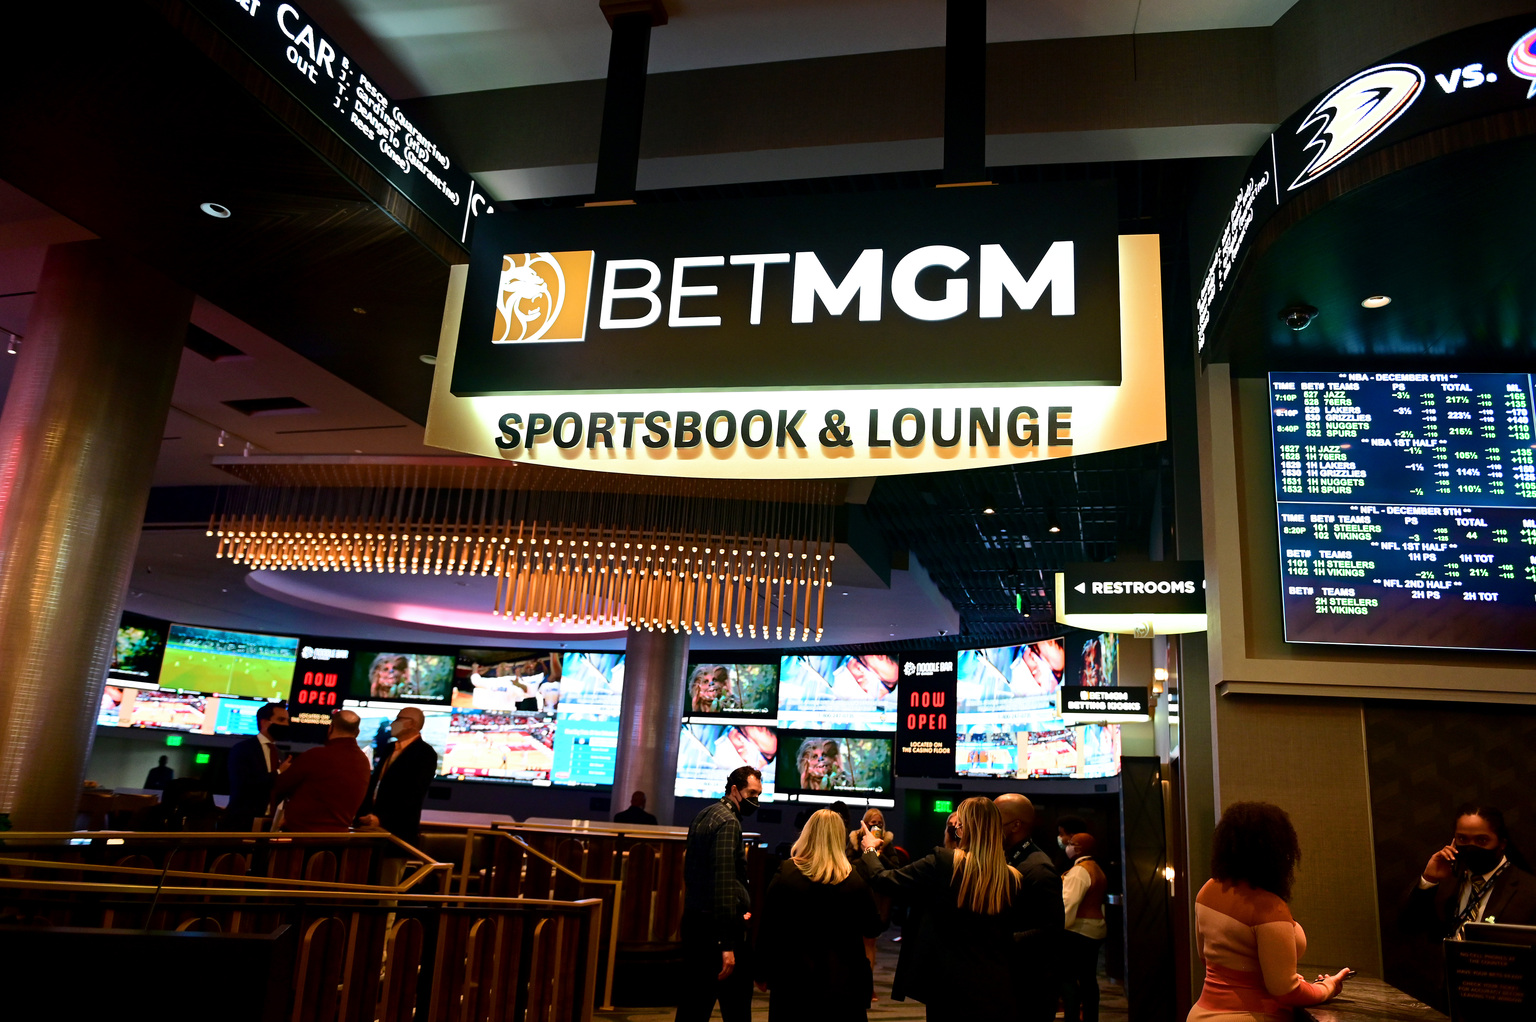 Las Vegas Casinos Boom Despite Fears of a U.S. Bust - WSJ